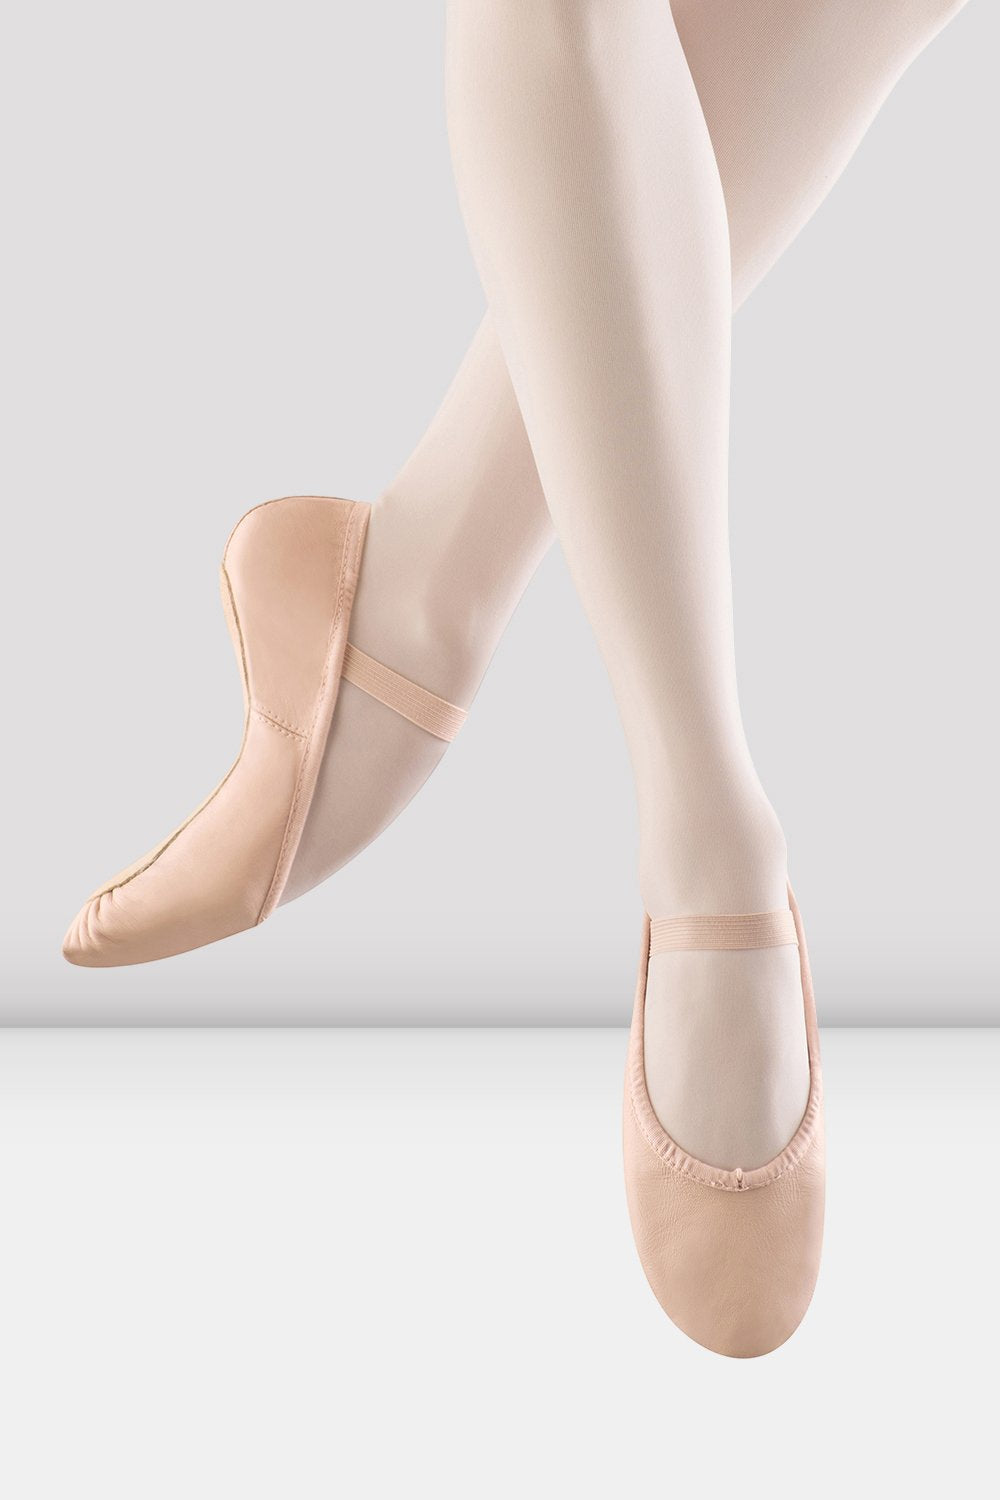 Bloch Child Dansoft Leather Ballet Shoe